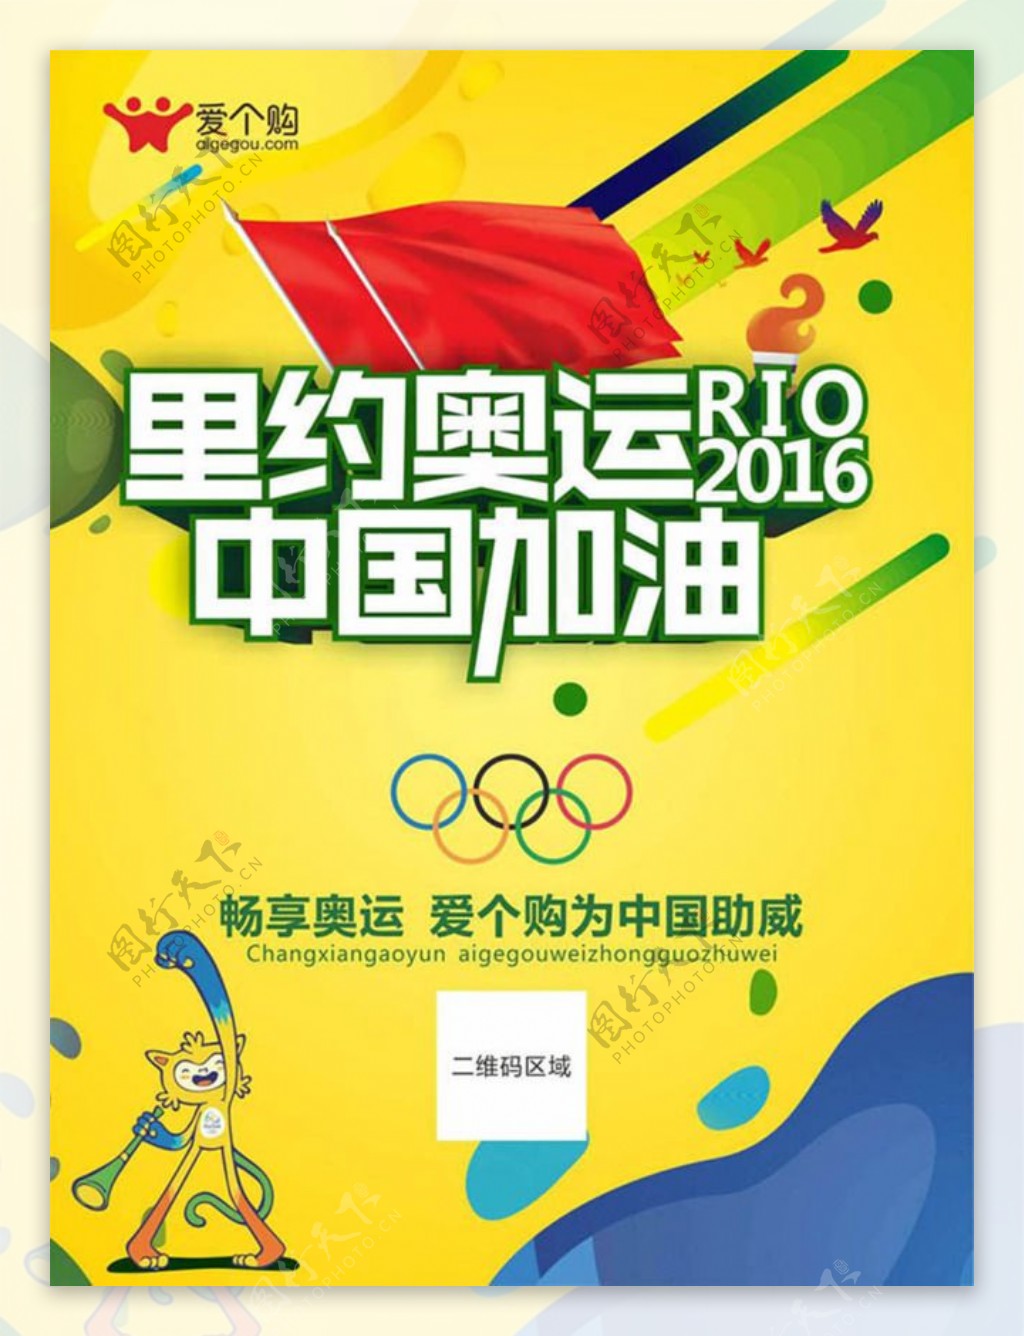 里约奥运会中国加油主题海报